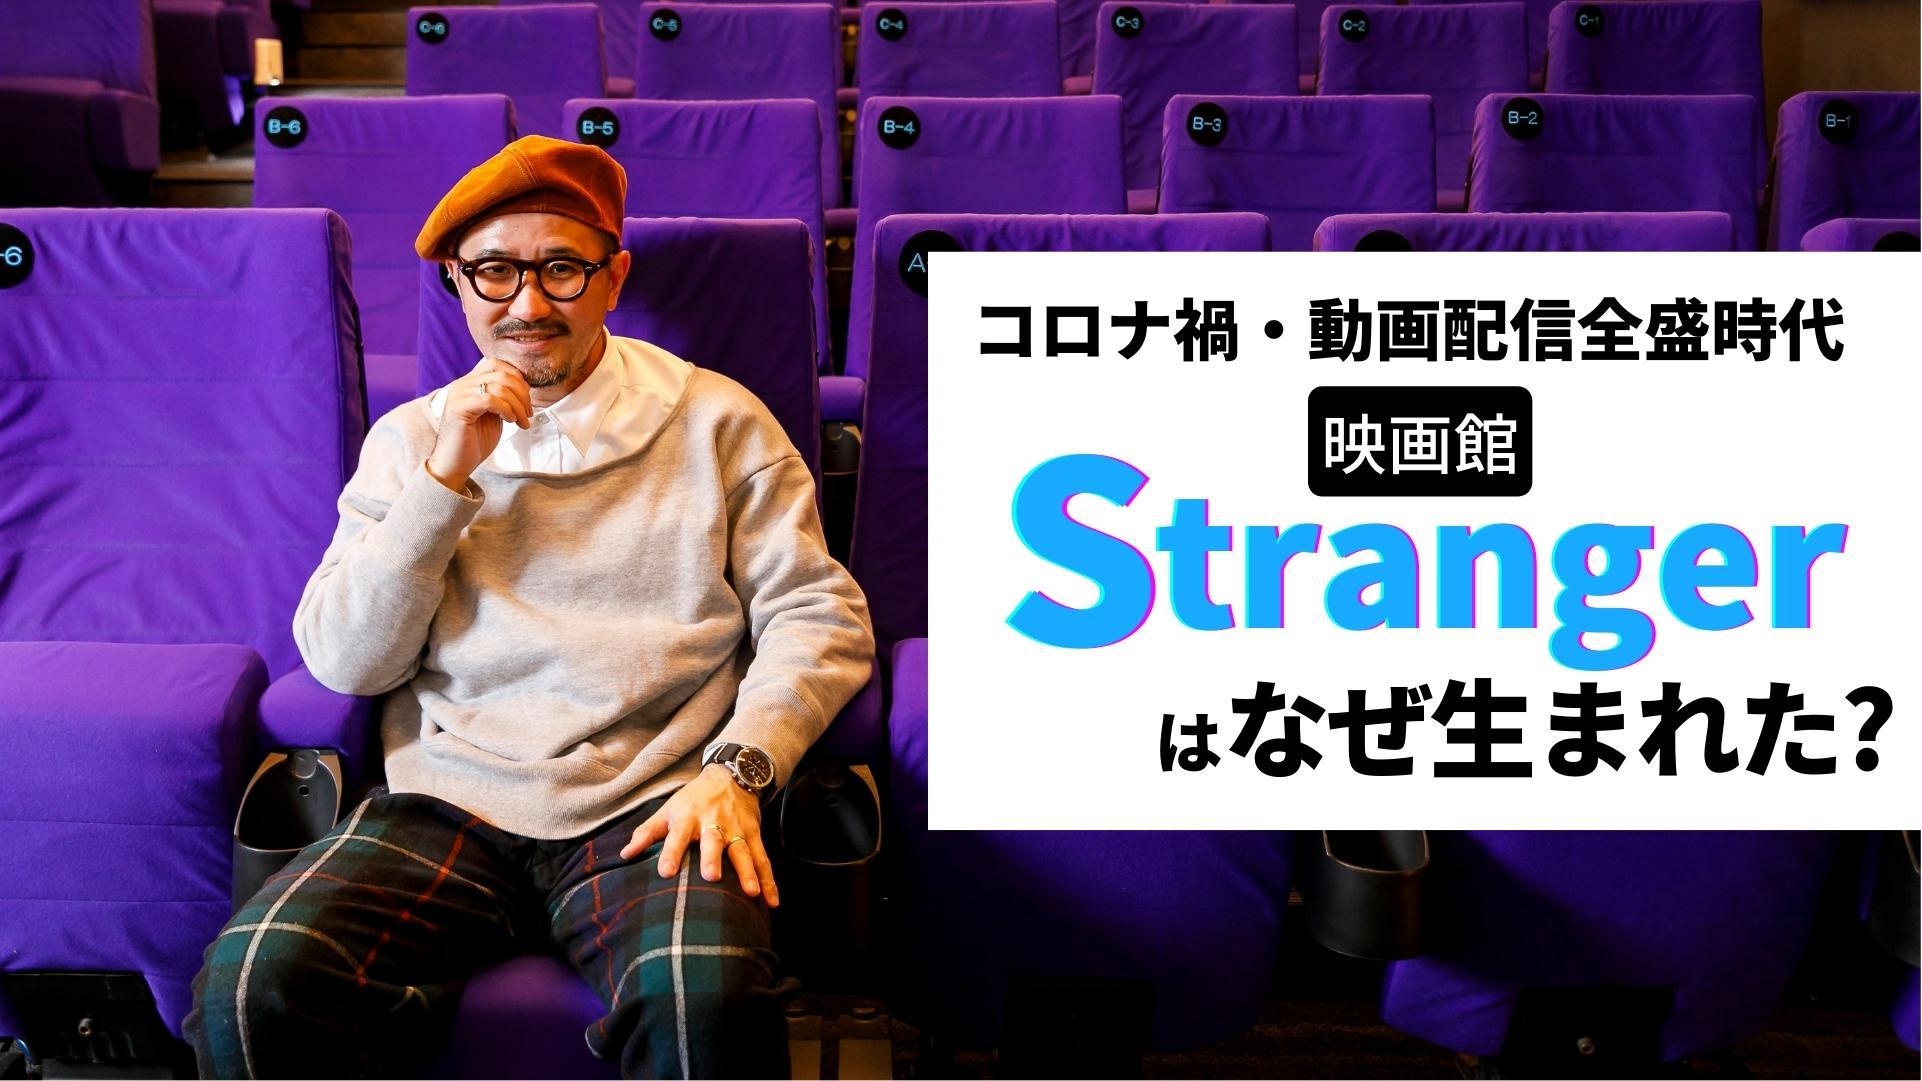  映画館「Stranger」チーフ・ディレクターの岡村忠征さんにインタビュー